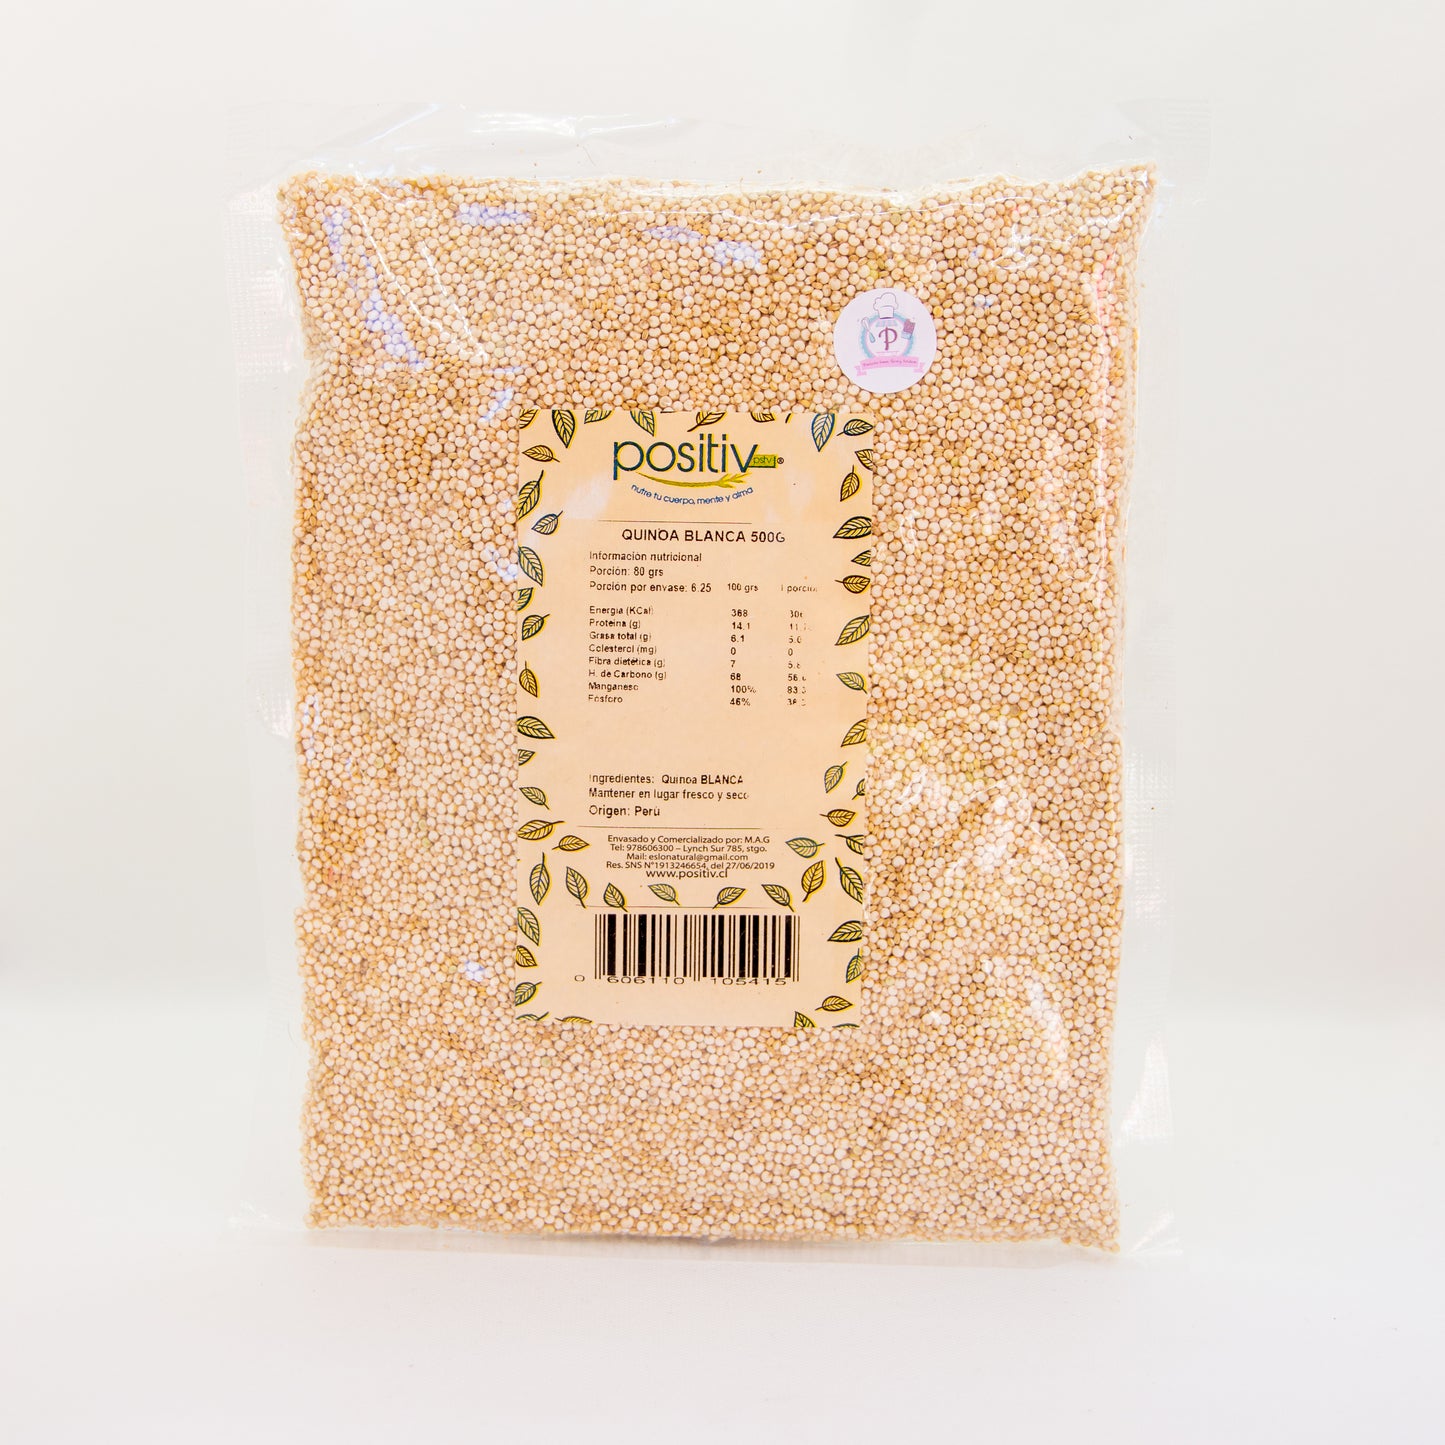 Quinoa blanca lavada "Positiv" - 500gr